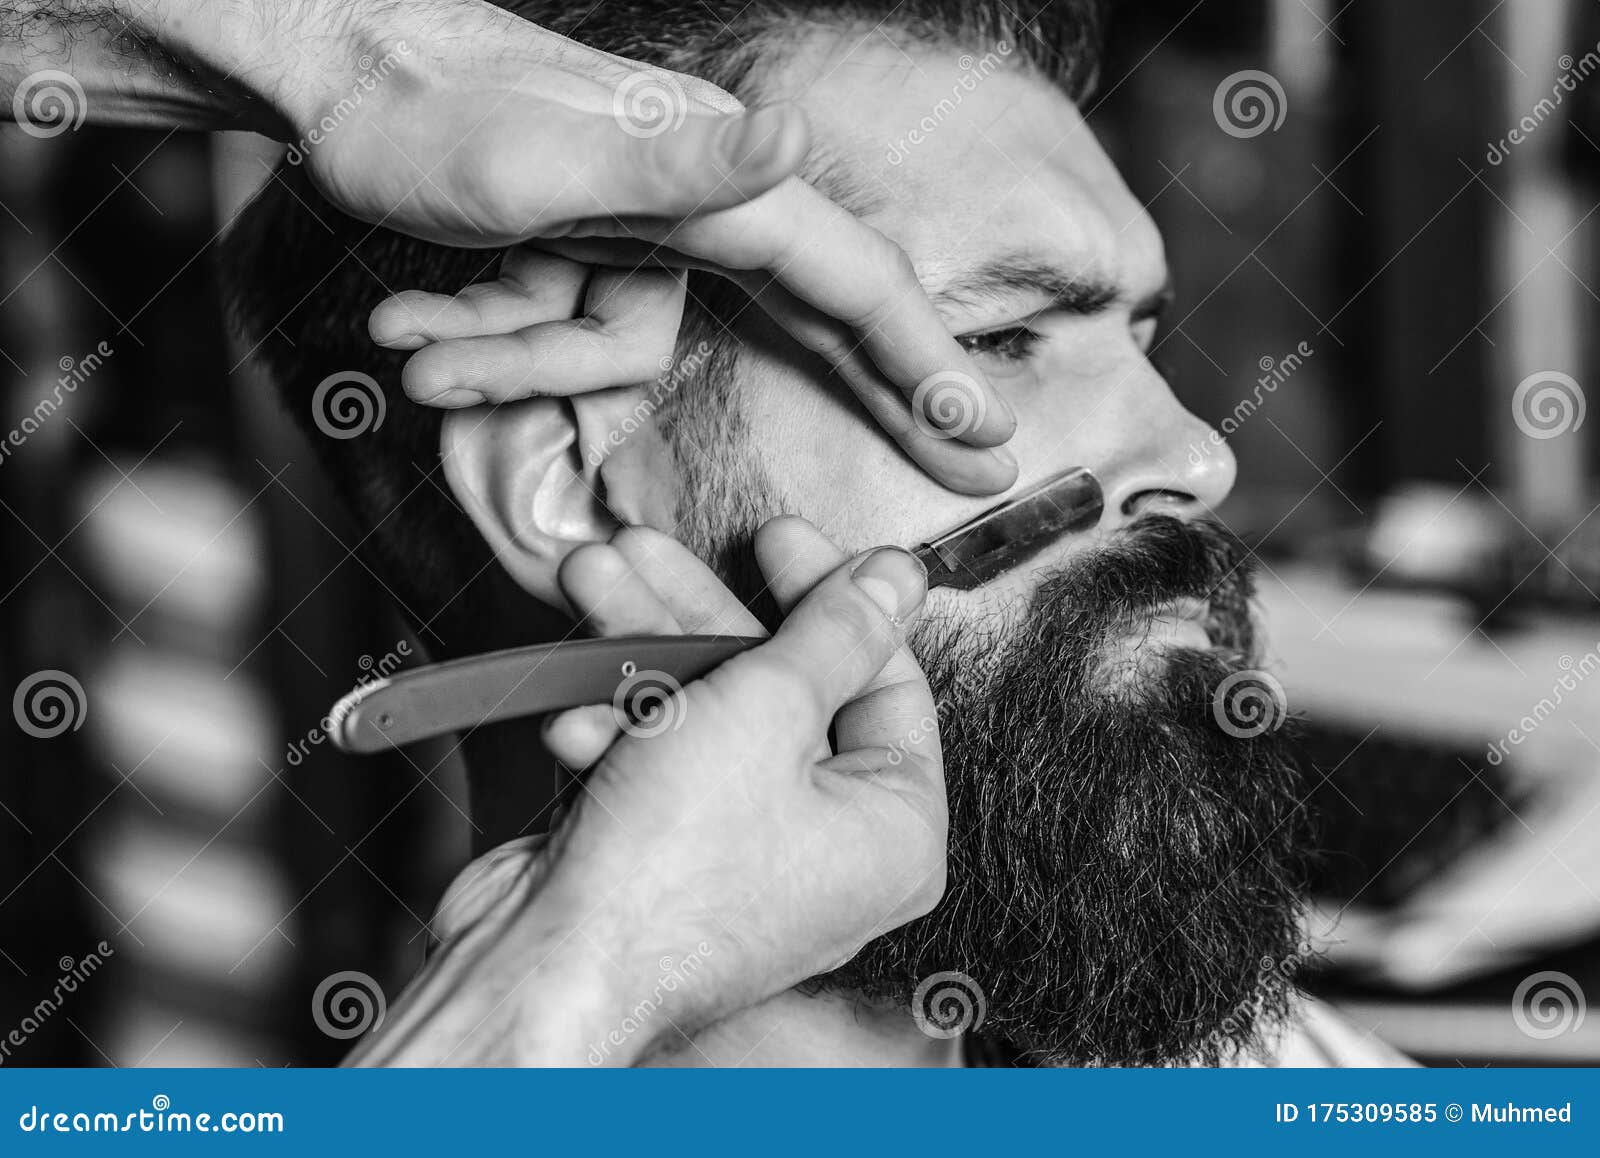 El Peluquero Afeita La Cabeza Del Cliente Con Una Máquina De Afeitar Foto  de archivo - Imagen de haircut, servicio: 134216192